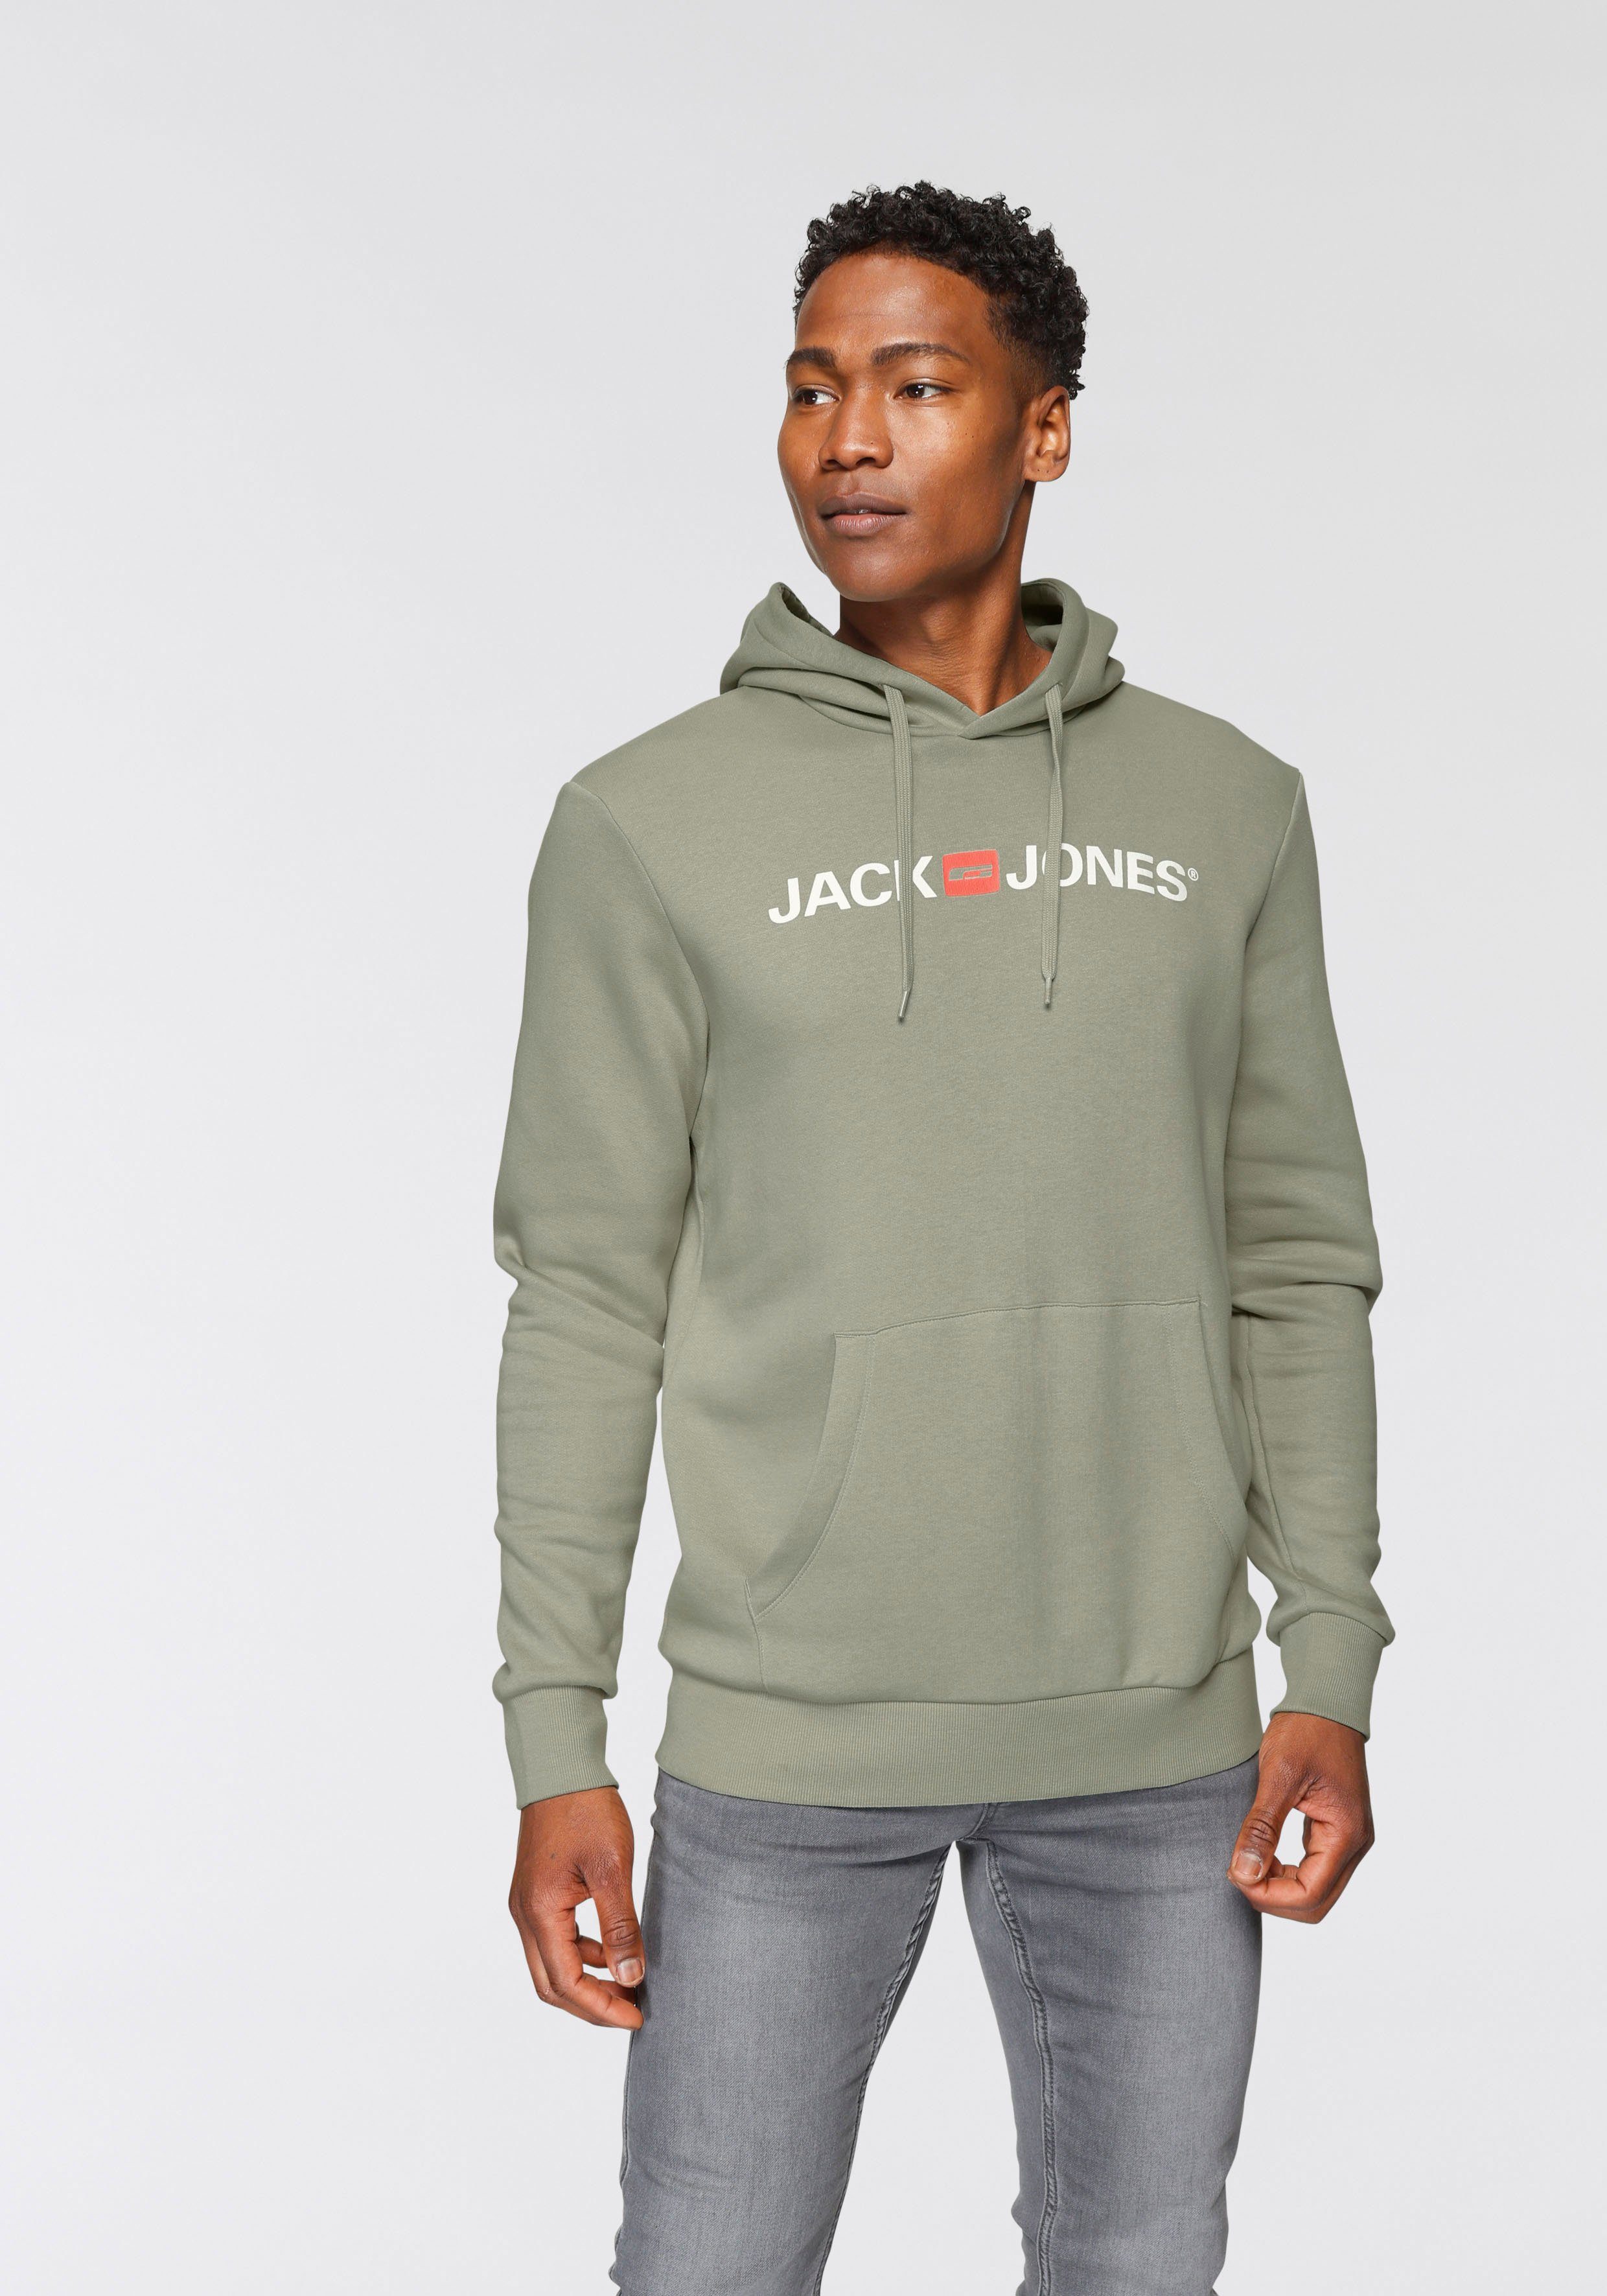 Jack & Jones Herren Sweatshirts online kaufen | OTTO